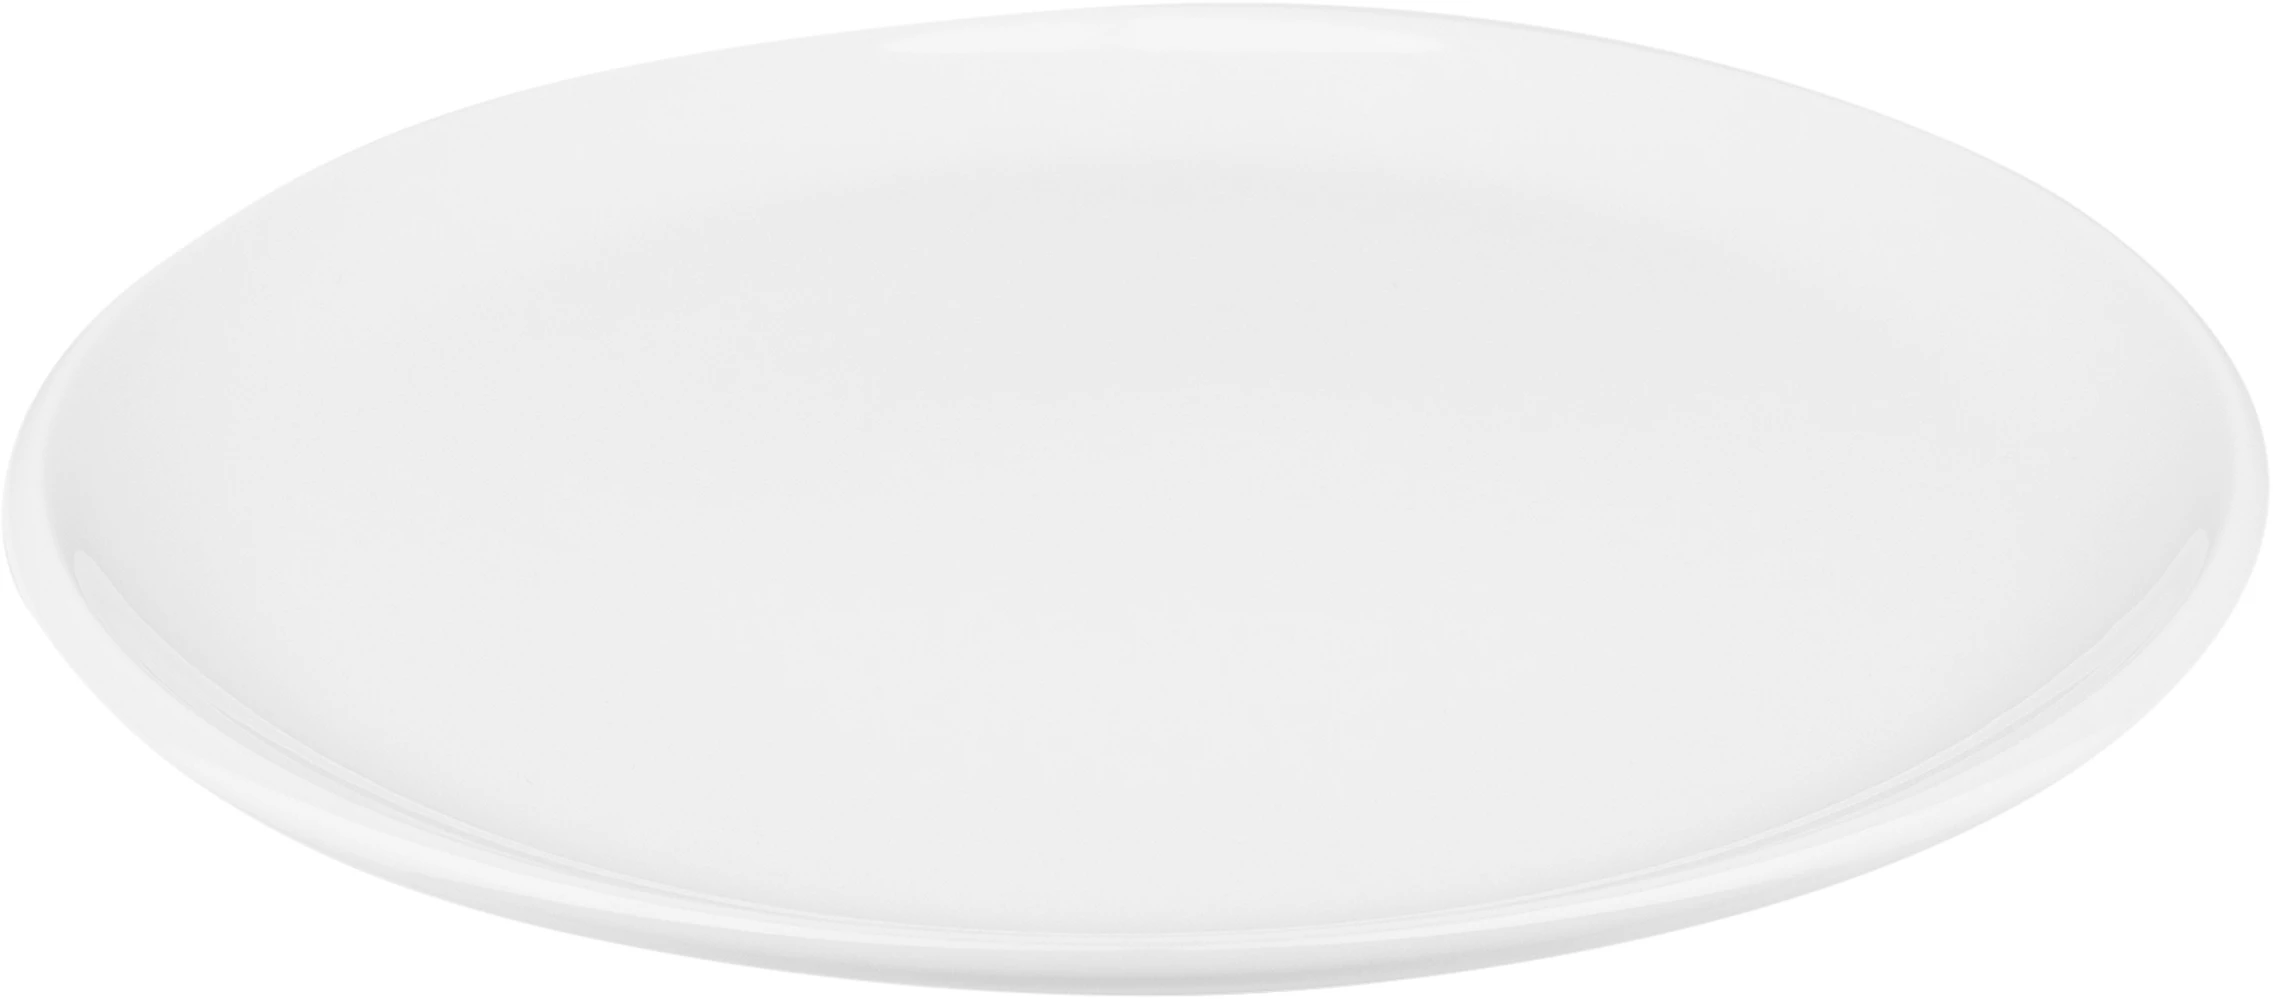 Figgjo Pax flad tallerken, hvid, ø22 cm